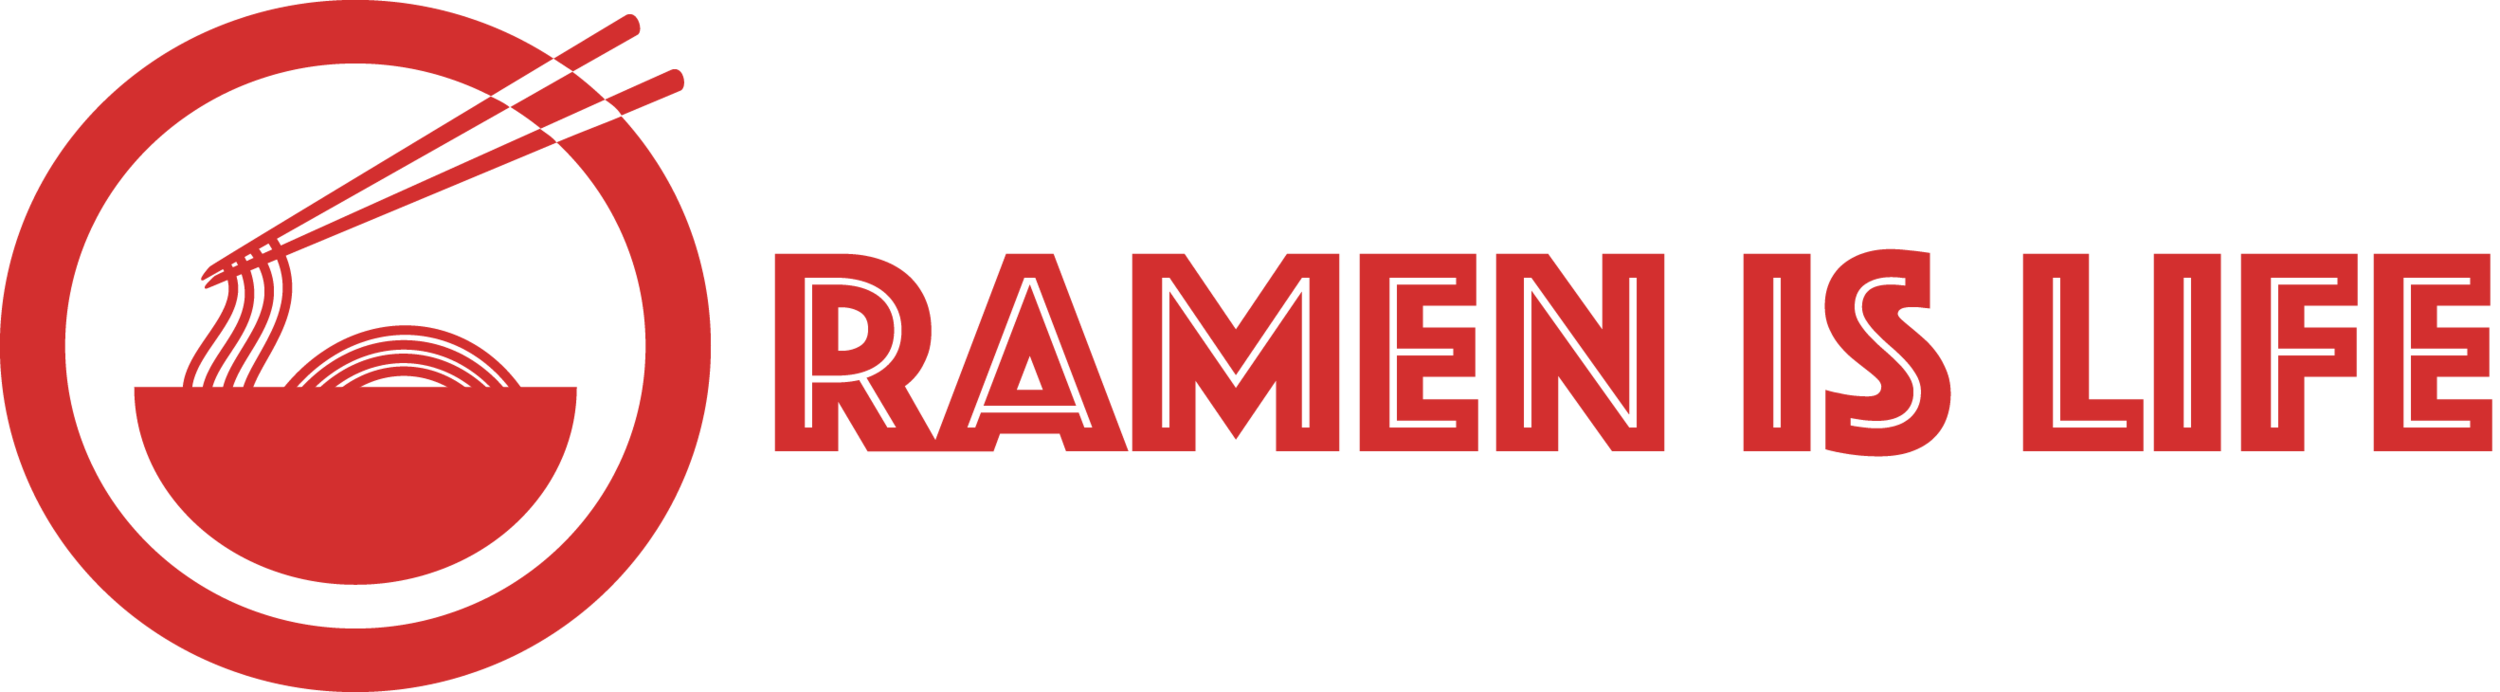 Ramen Is Life Blog - Ramen Restaurant Reviews, DIY Recipes, Articles, Noodle News, 